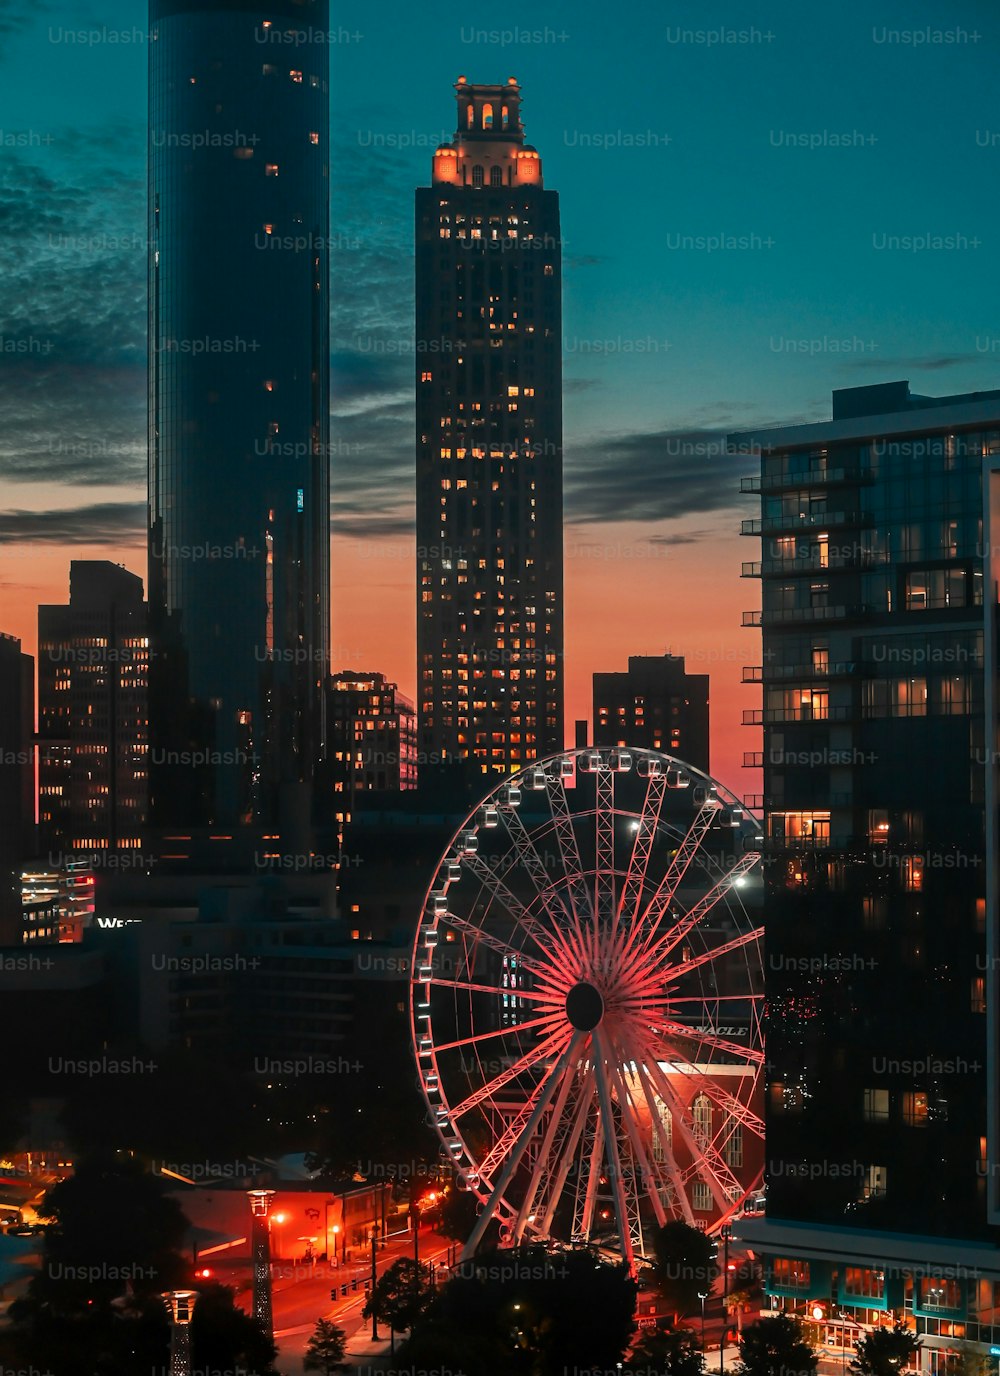 Una veduta aerea della città di Atlanta con una serie di alti grattacieli con una grande ruota panoramica in primo piano